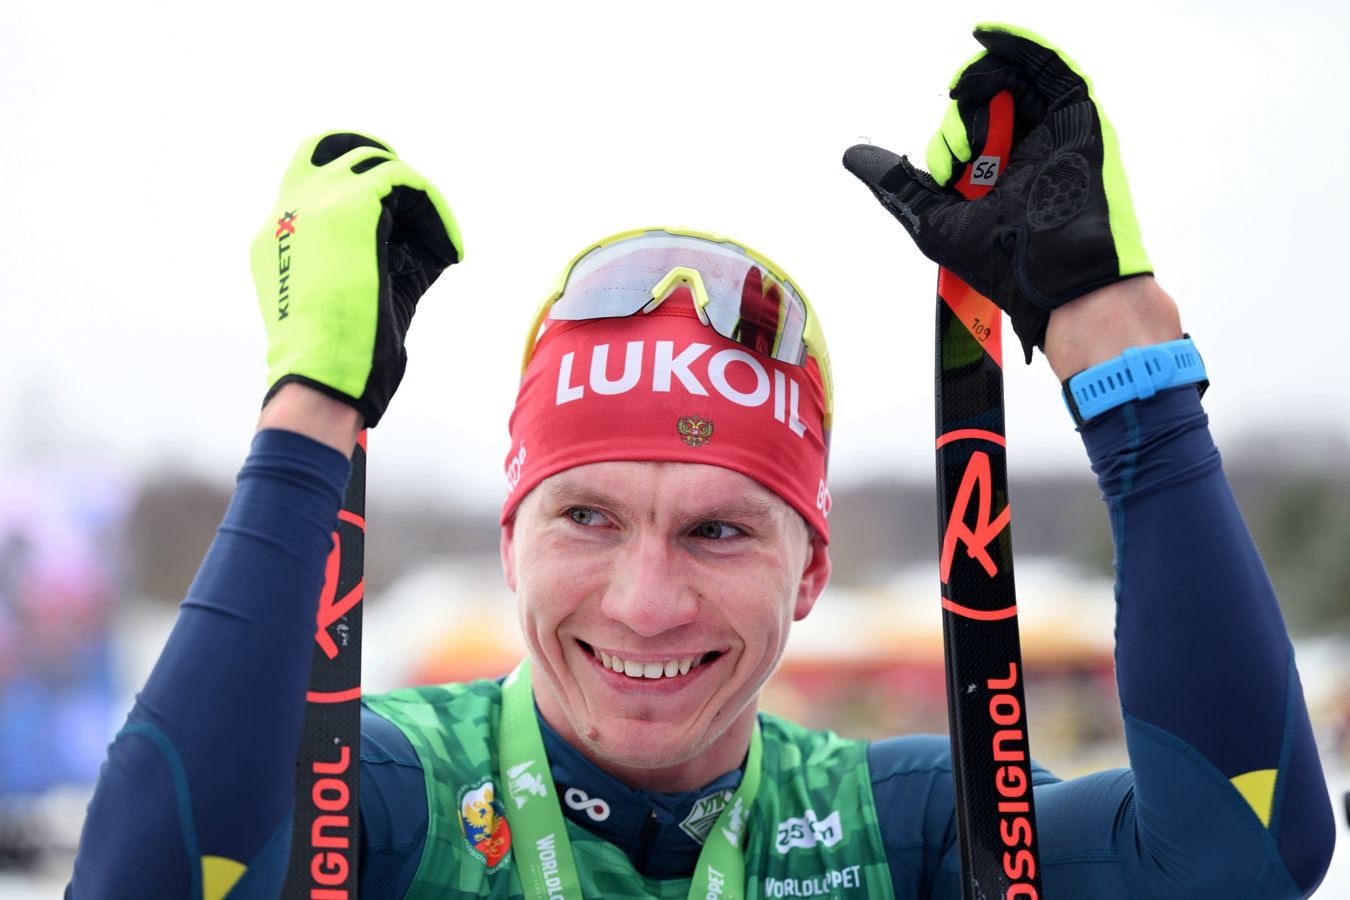 Брянский лыжник Александр Большунов выиграл гонку на 15 км в финале Кубка России